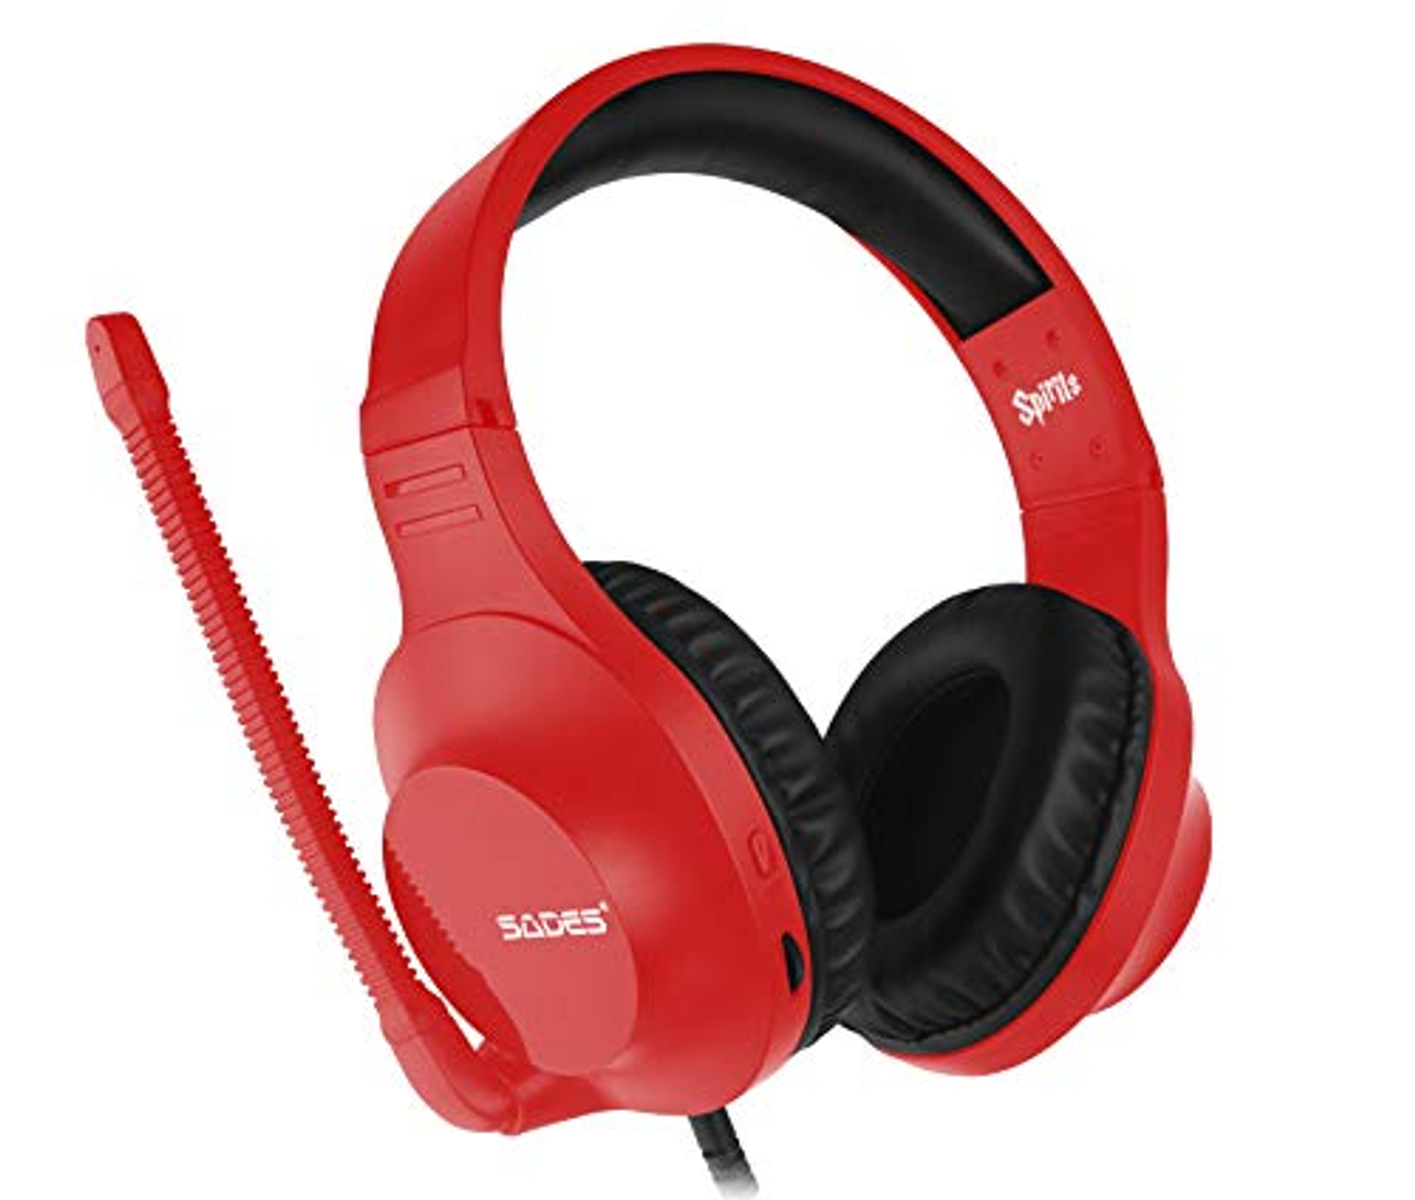 SADES Spirits Gaming rot Headset SA-721, Over-ear